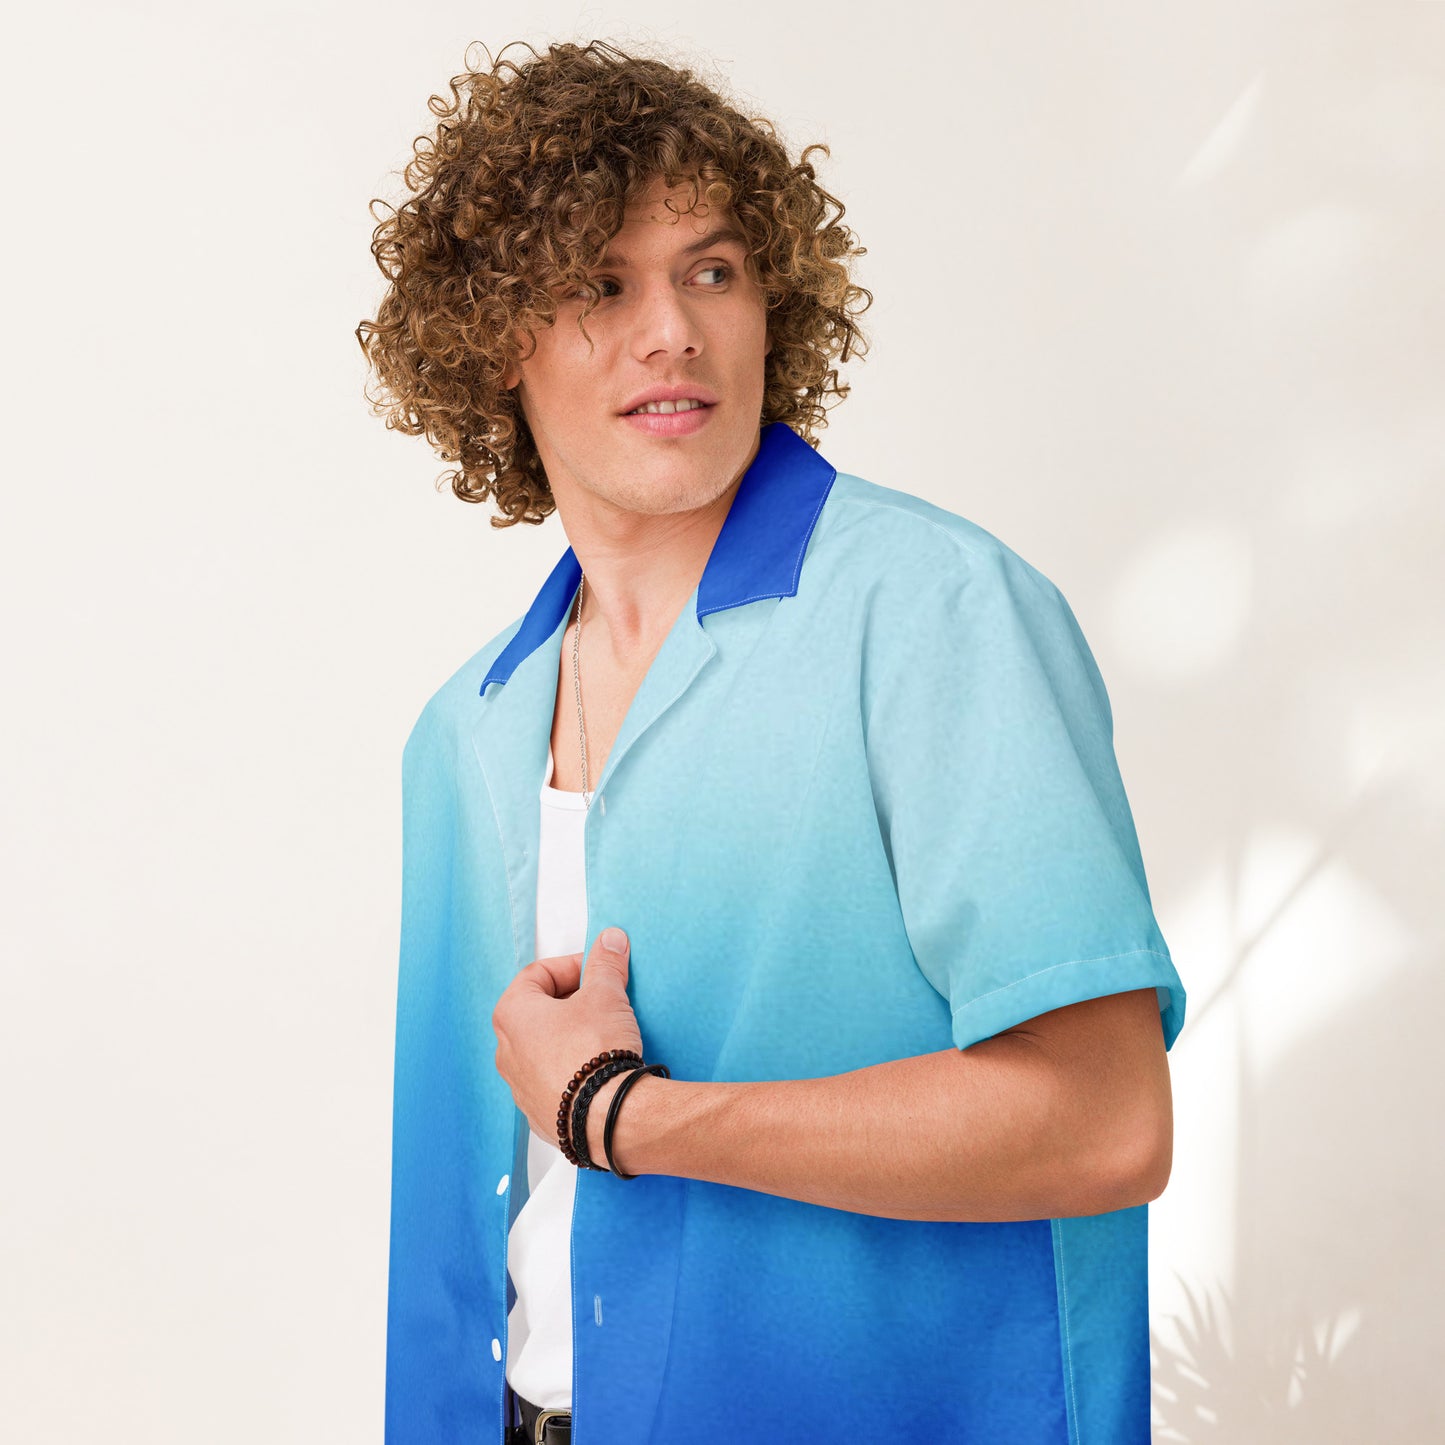 Humble Sportswear, men's button shirt, blue gradient breathable beach button down shirt